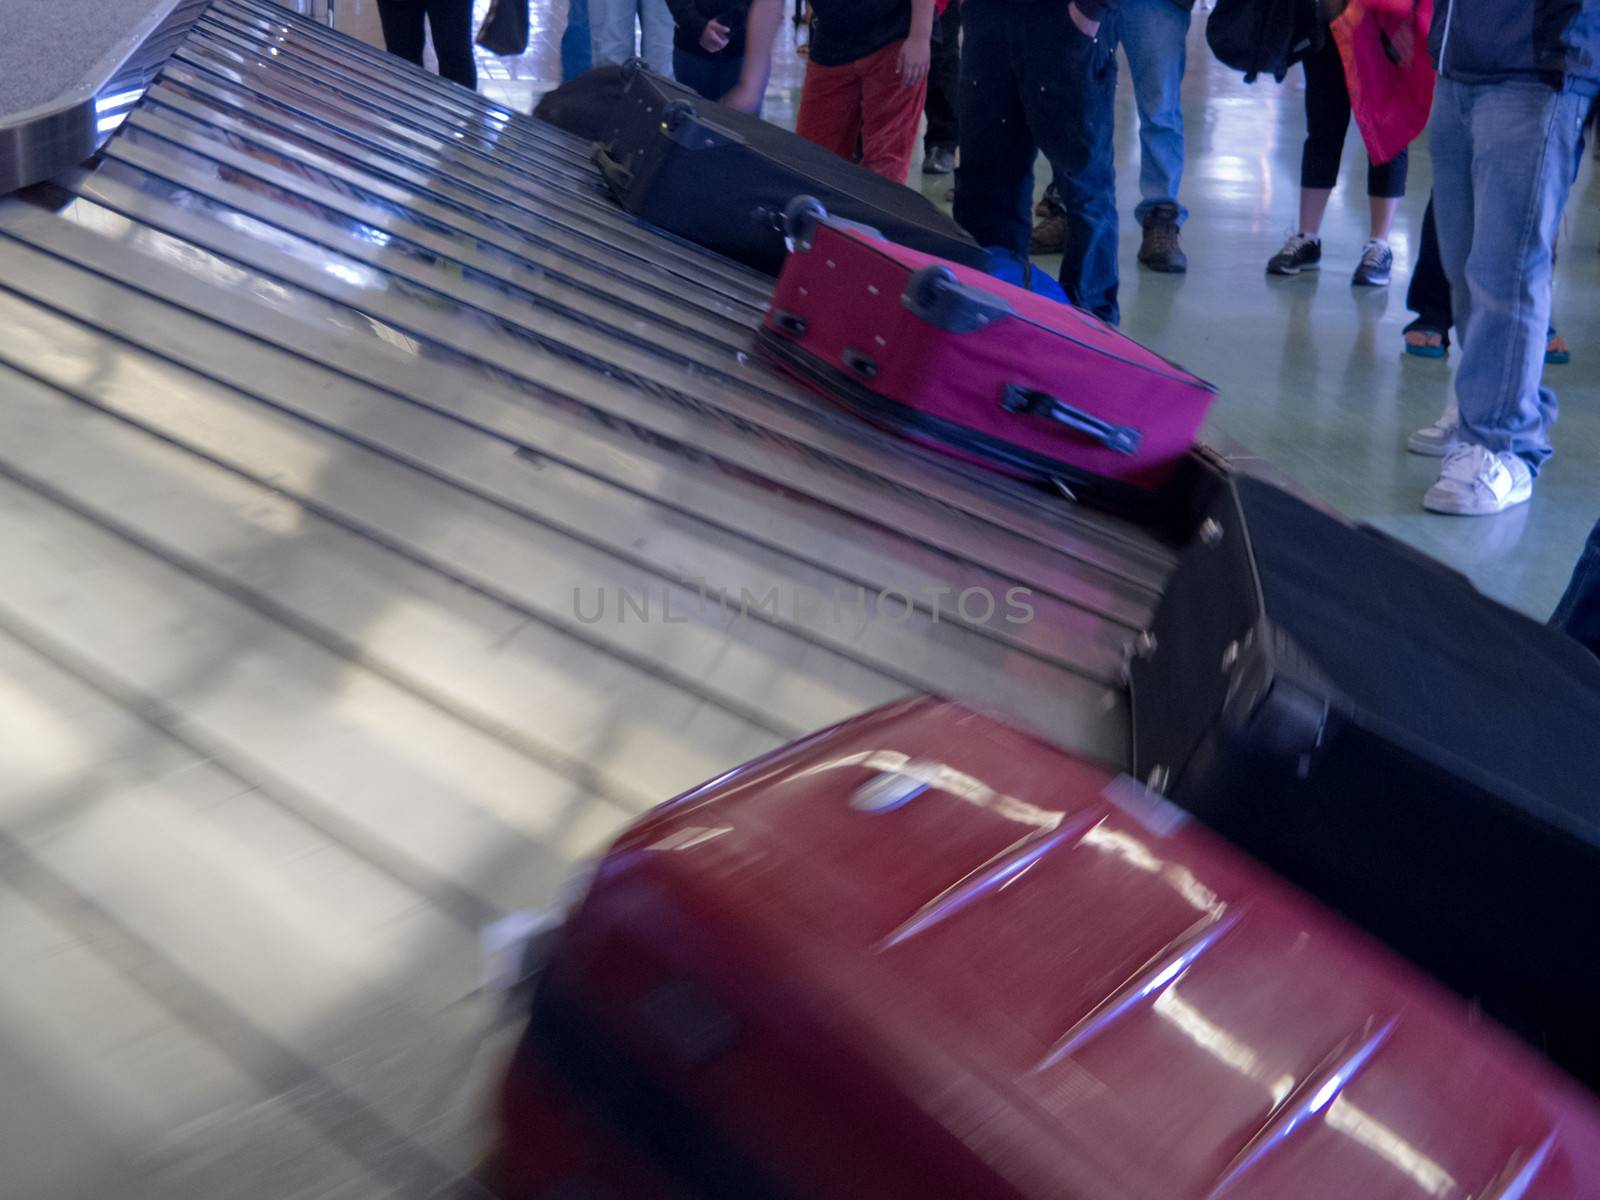 Waiting people claim baggage airport conveyor belt by PiLens